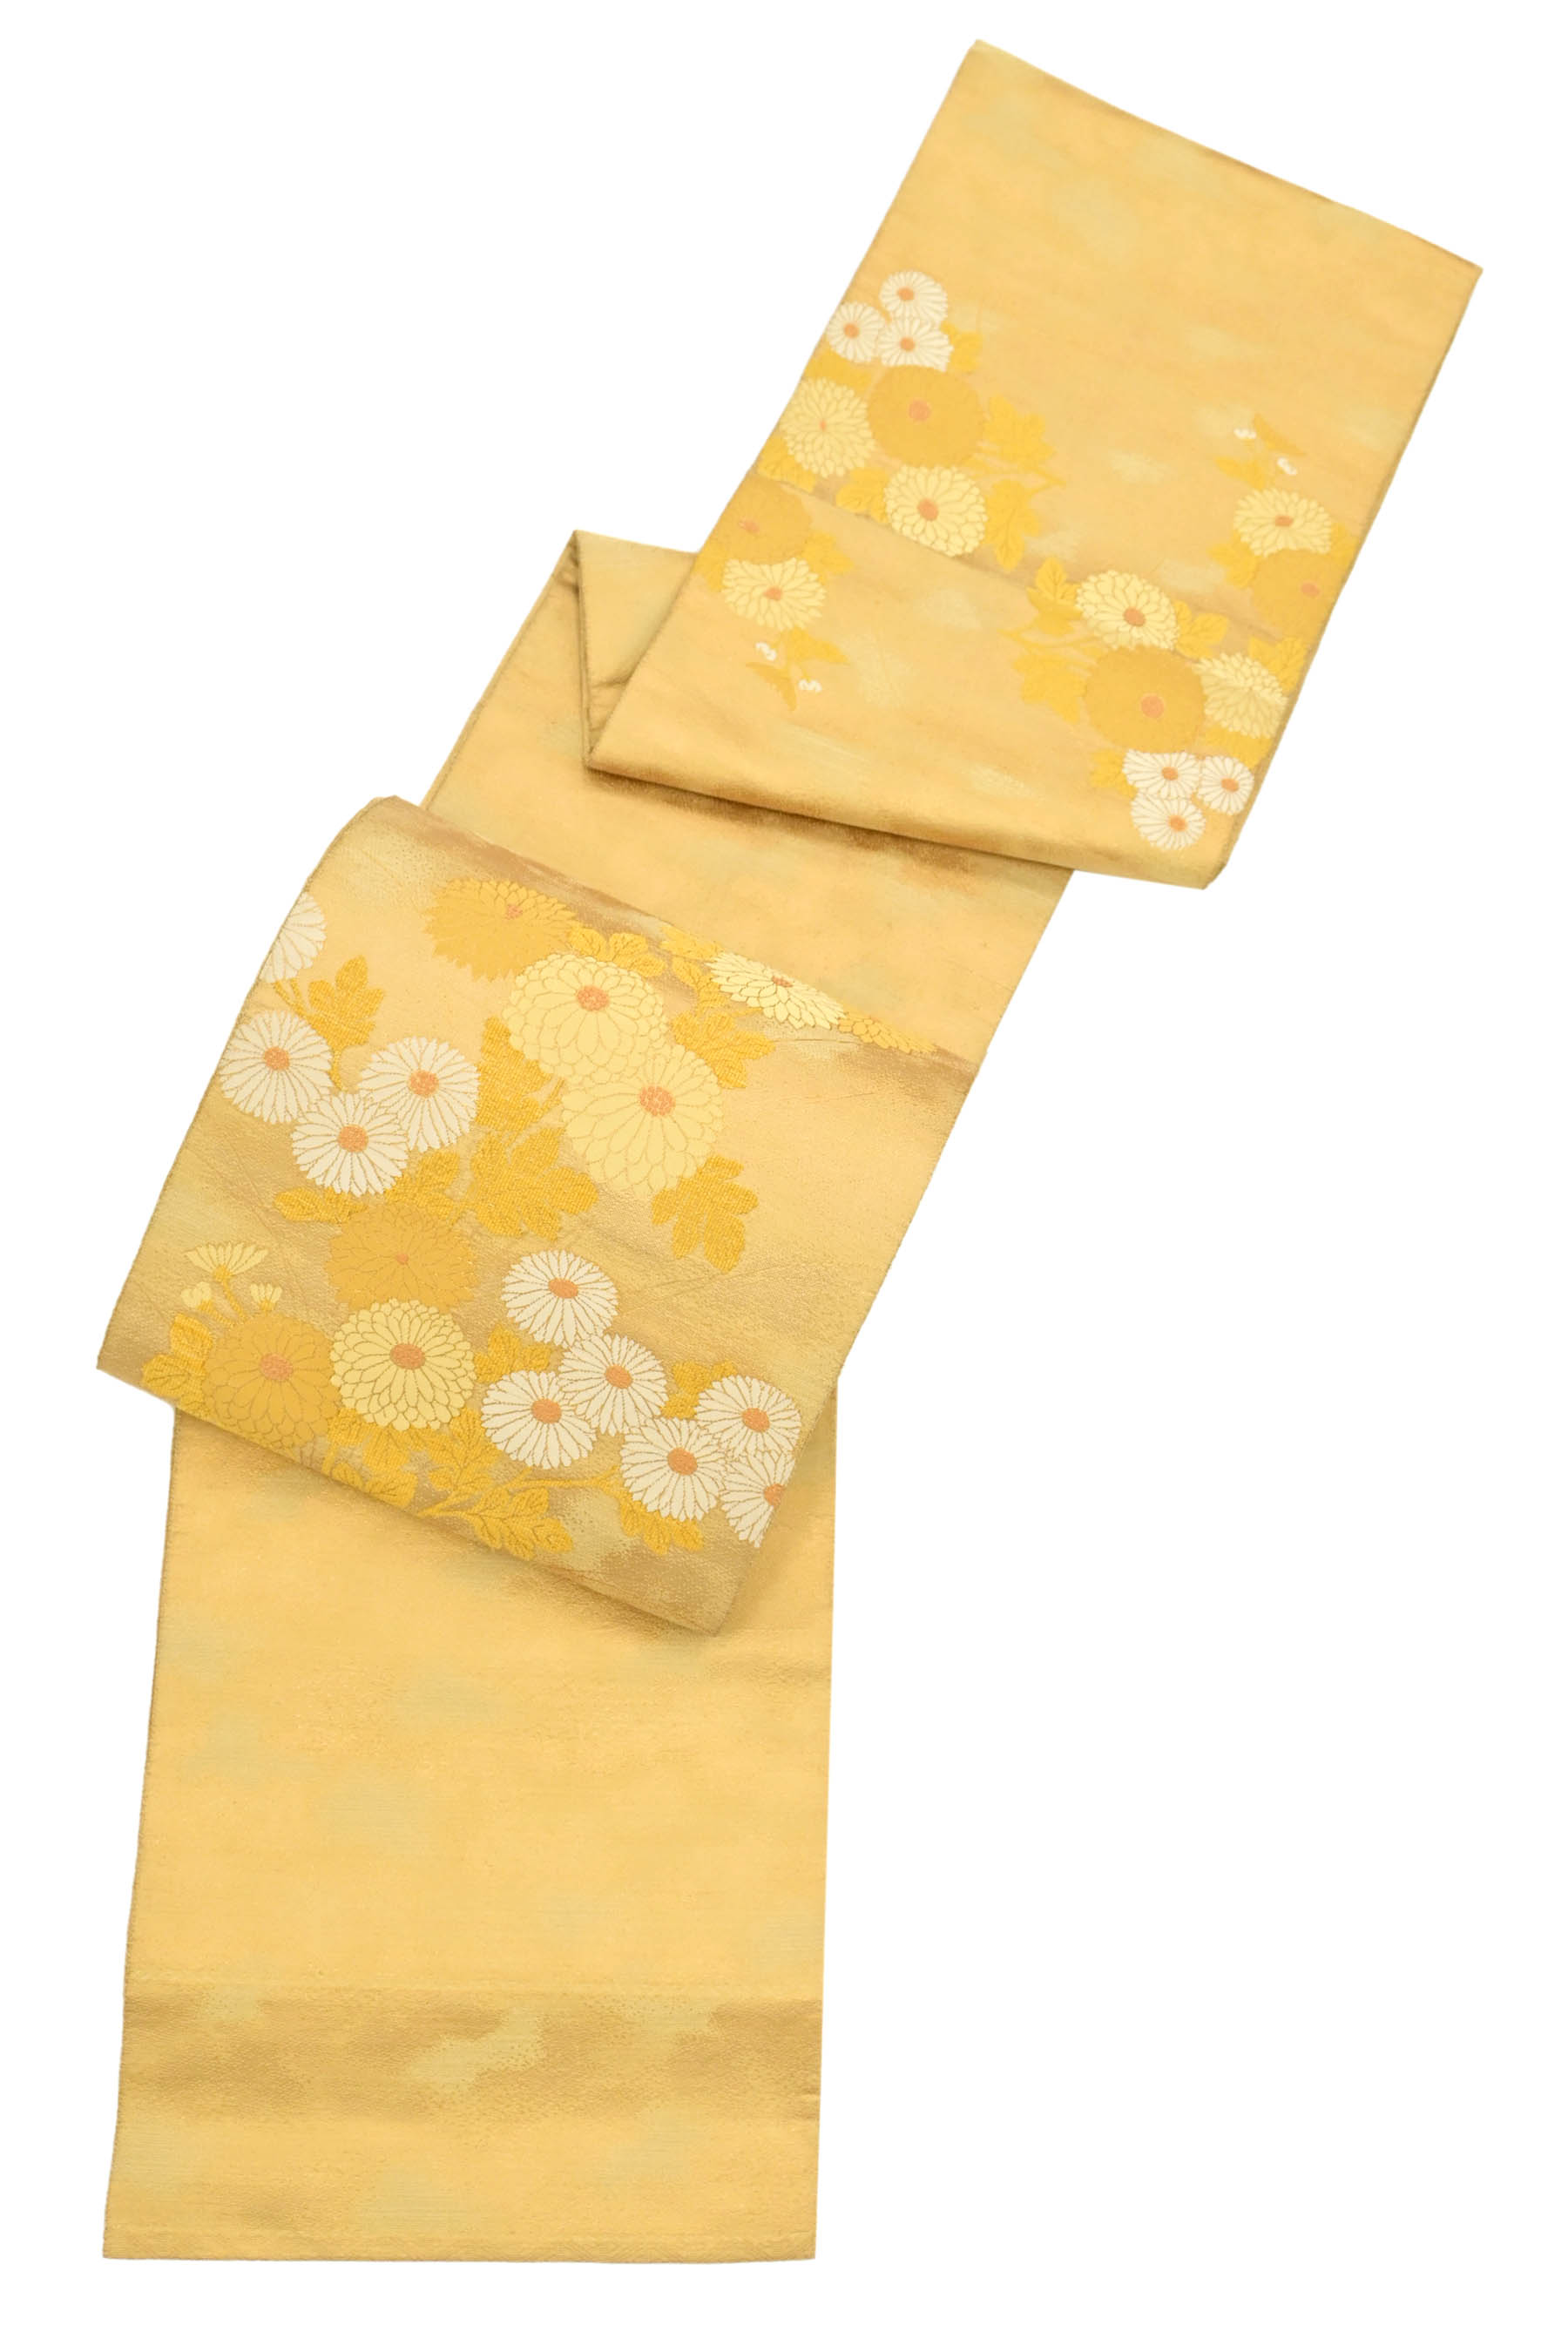 商品詳細 - 創作正絹袋帯 「箔綴菊花情趣」 ☆すっきり洗練の帯姿